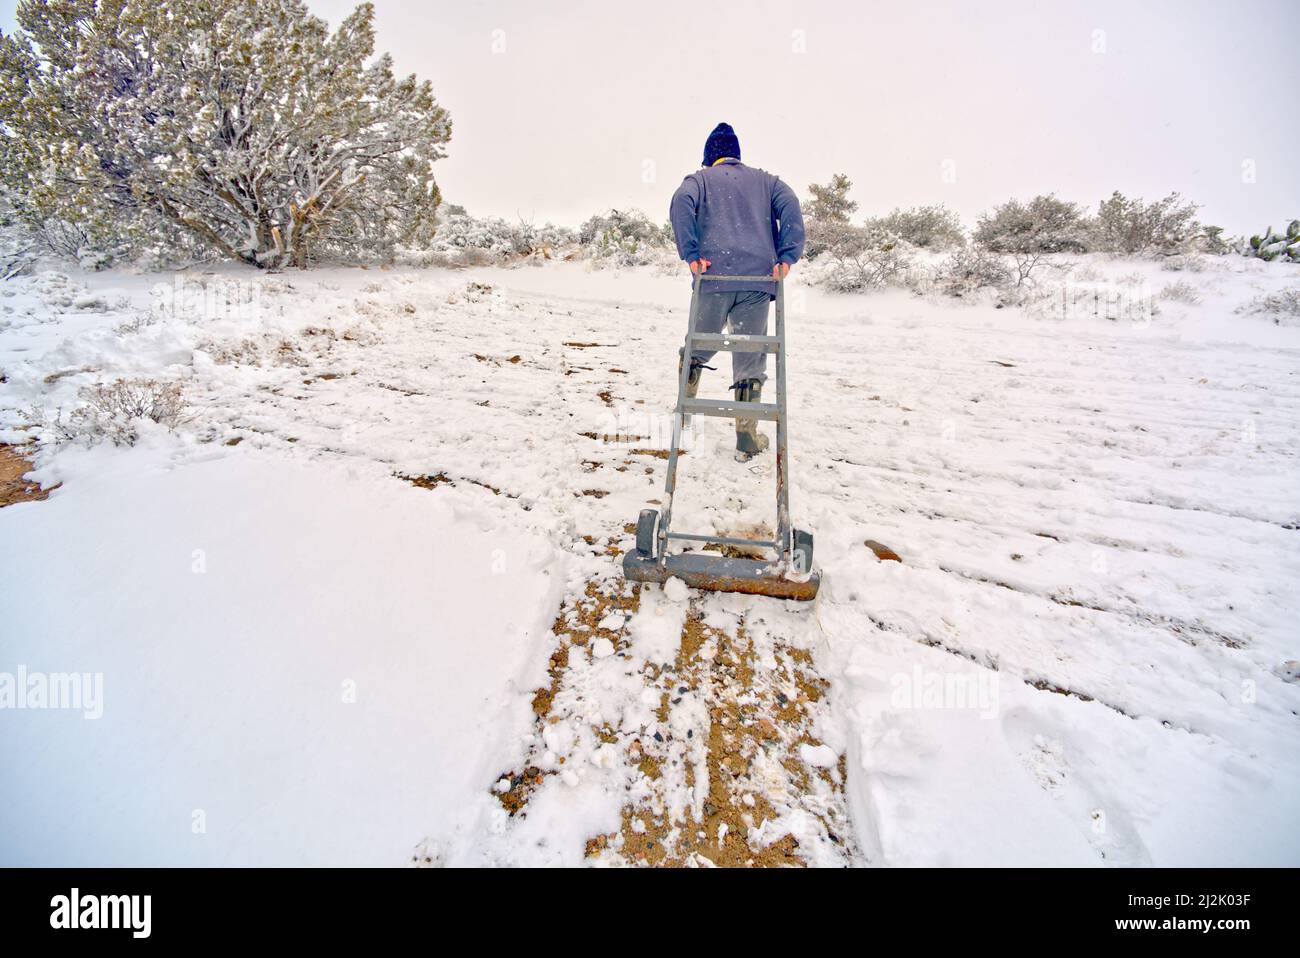 Vista trasera de un hombre usando un aparato al revés Dolly para limpiar la nieve, Chino Valley, Arizona, Estados Unidos Foto de stock